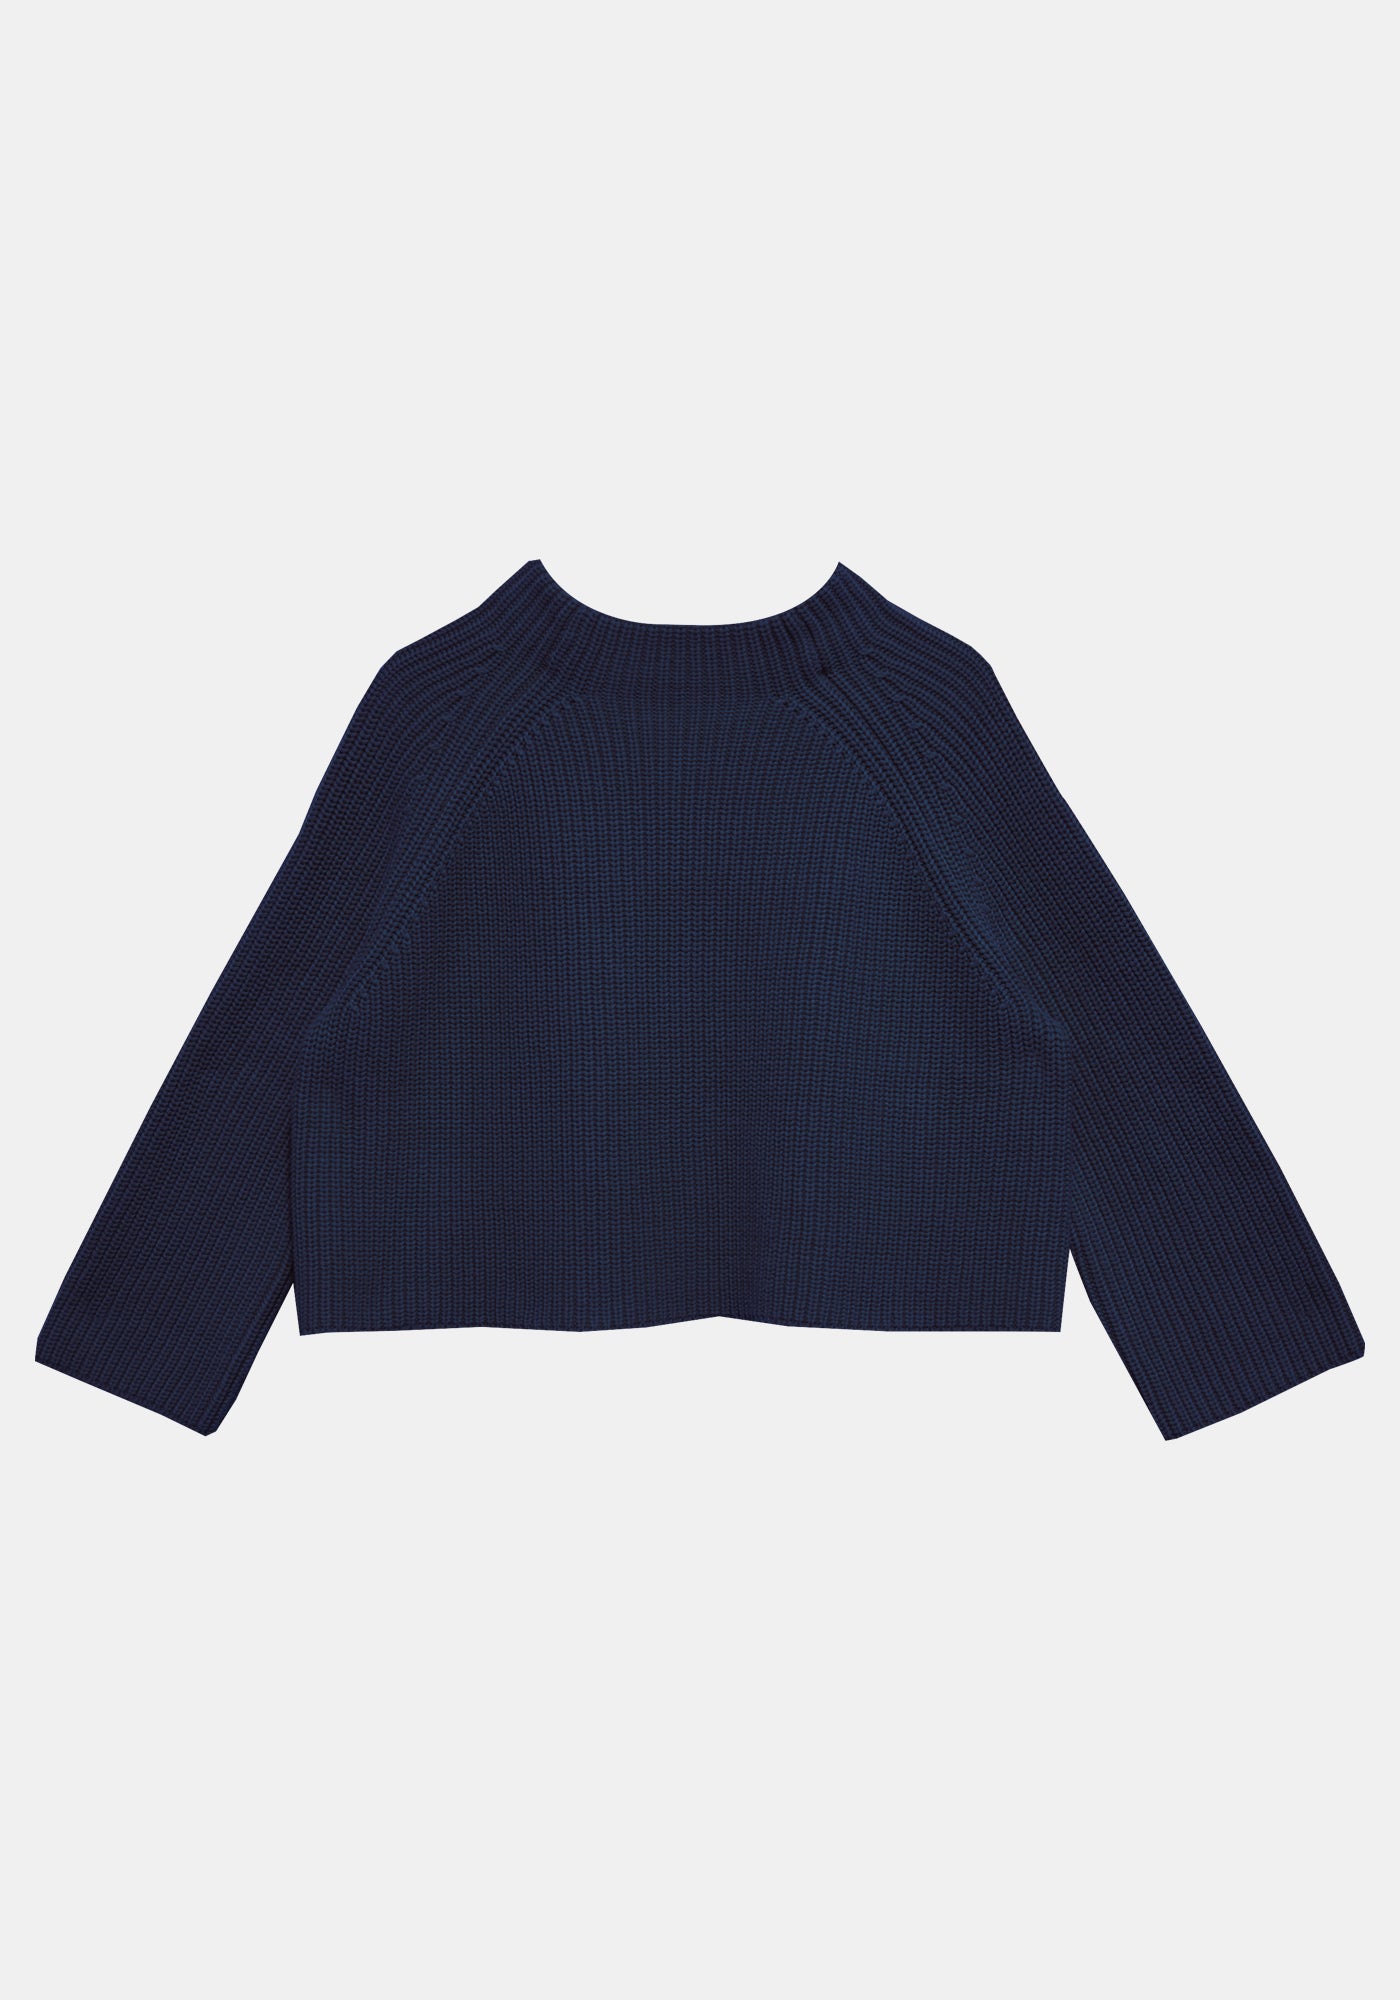 Fenna Sweater